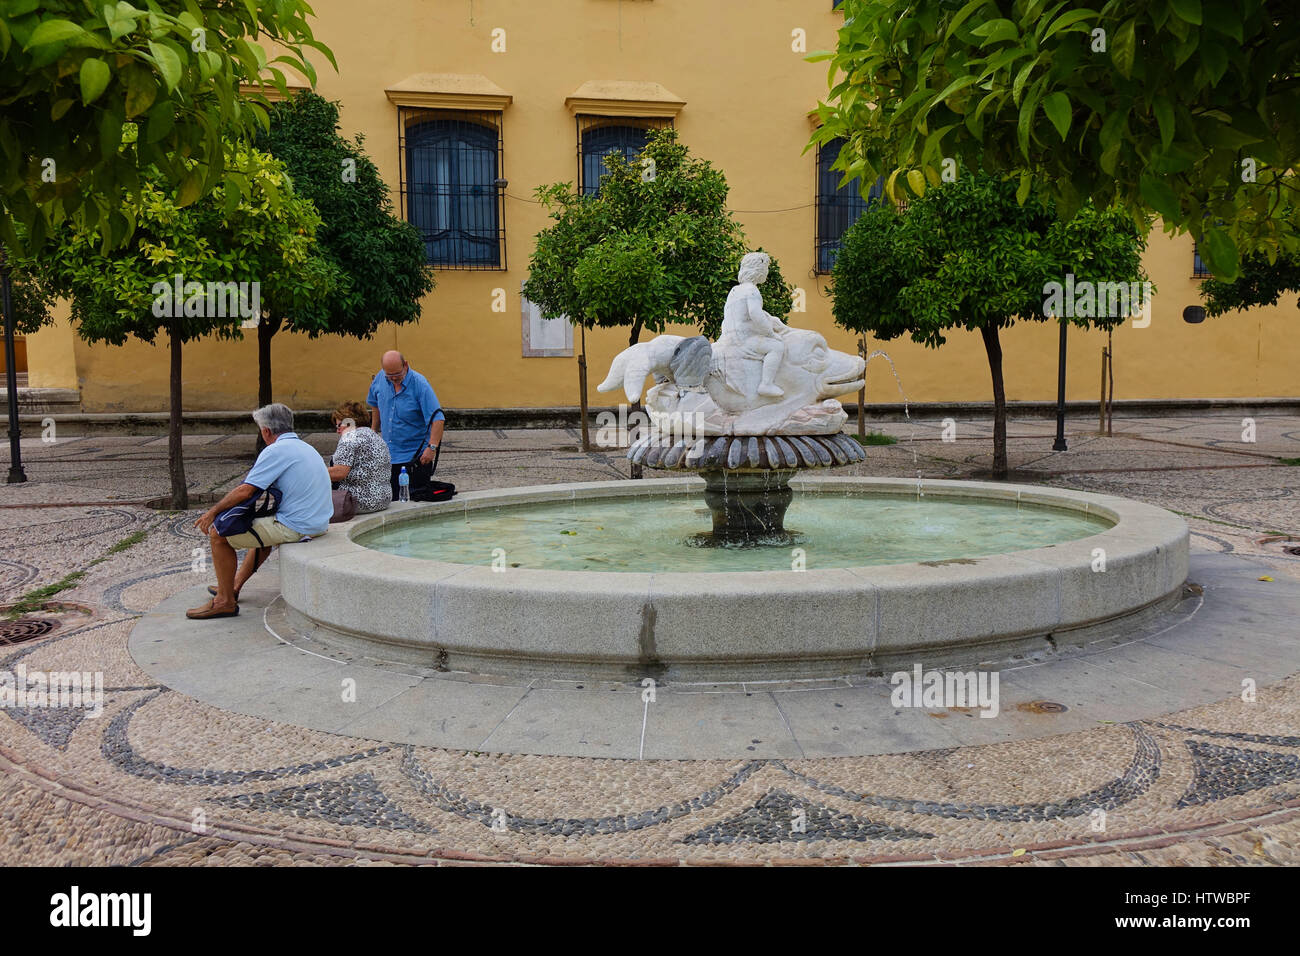 Los turistas sentados en una fuente en España Foto de stock